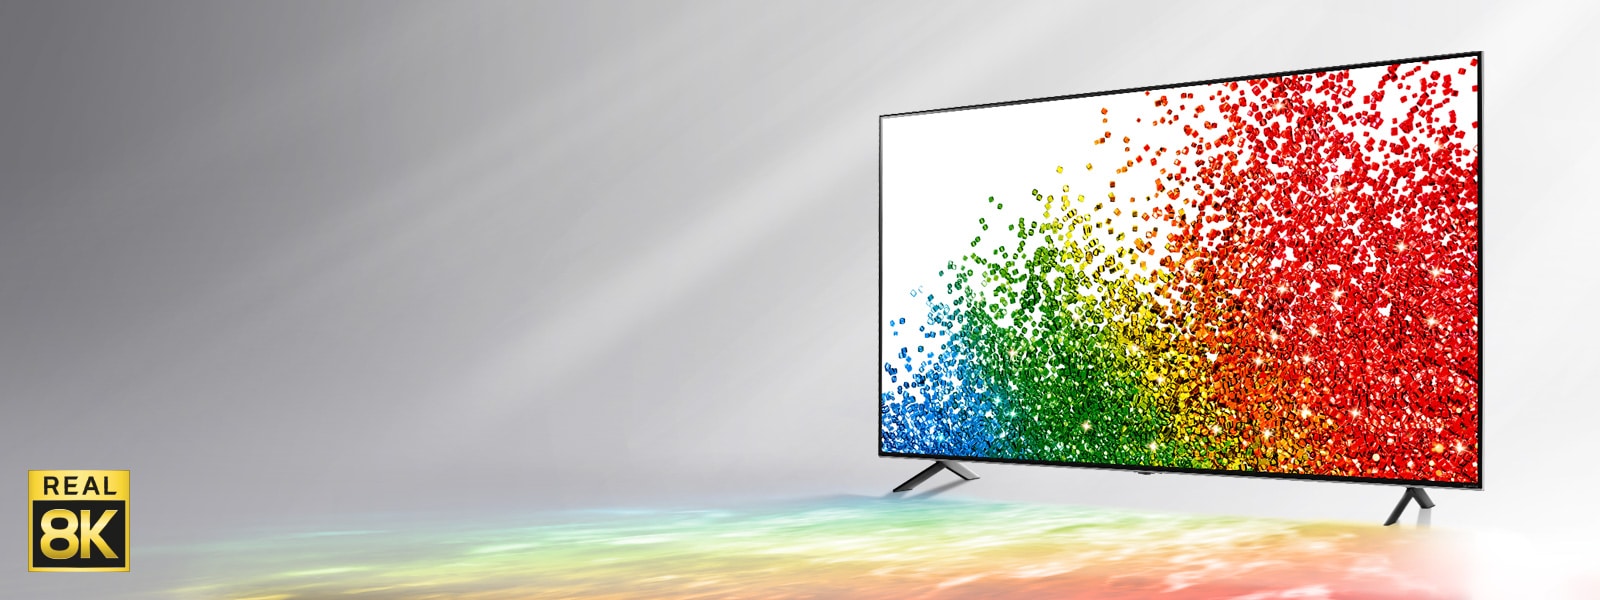 Ein Bild des LG NanoCell TV vor einem grauen Hintergrund. Die Farben vom Bildschirm werden auf dem Boden davor reflektiert.